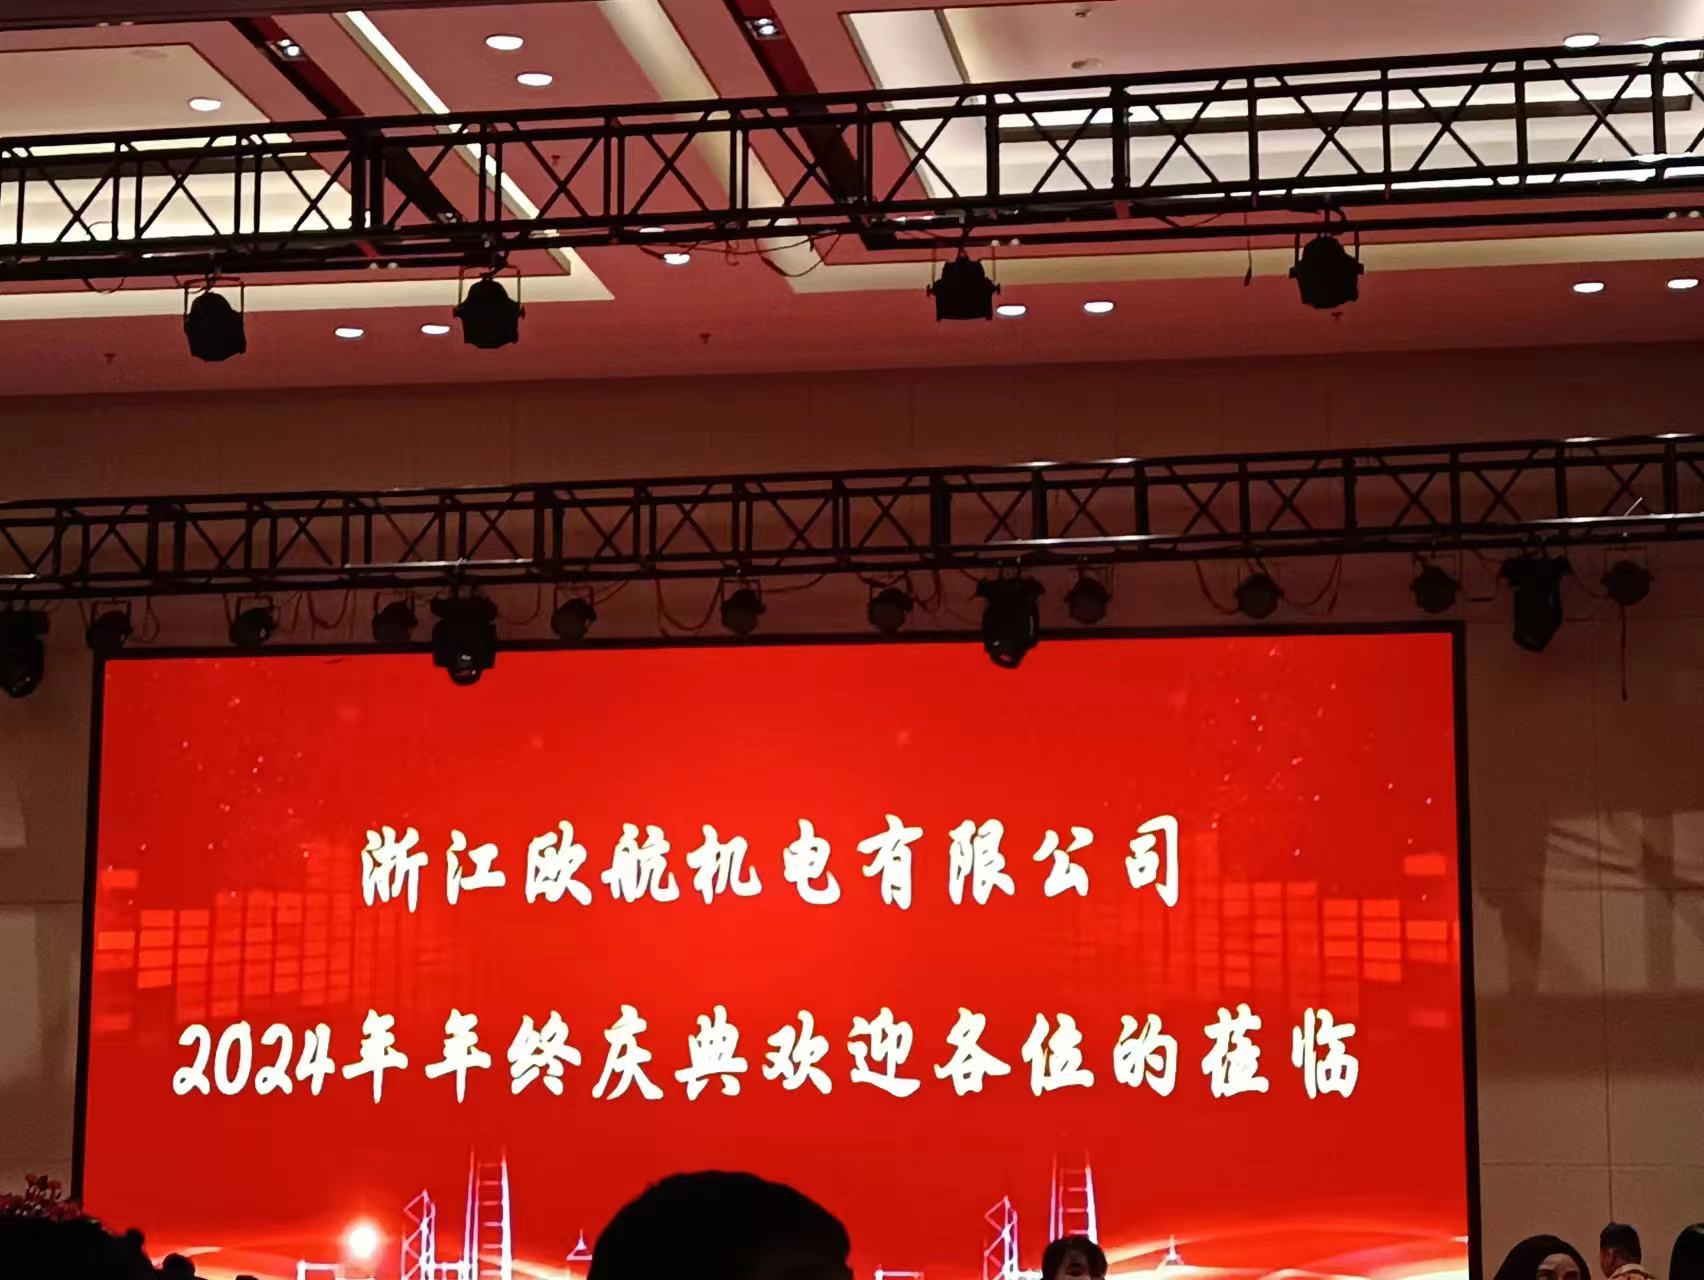 Perayaan Tahunan Ouhang 2024